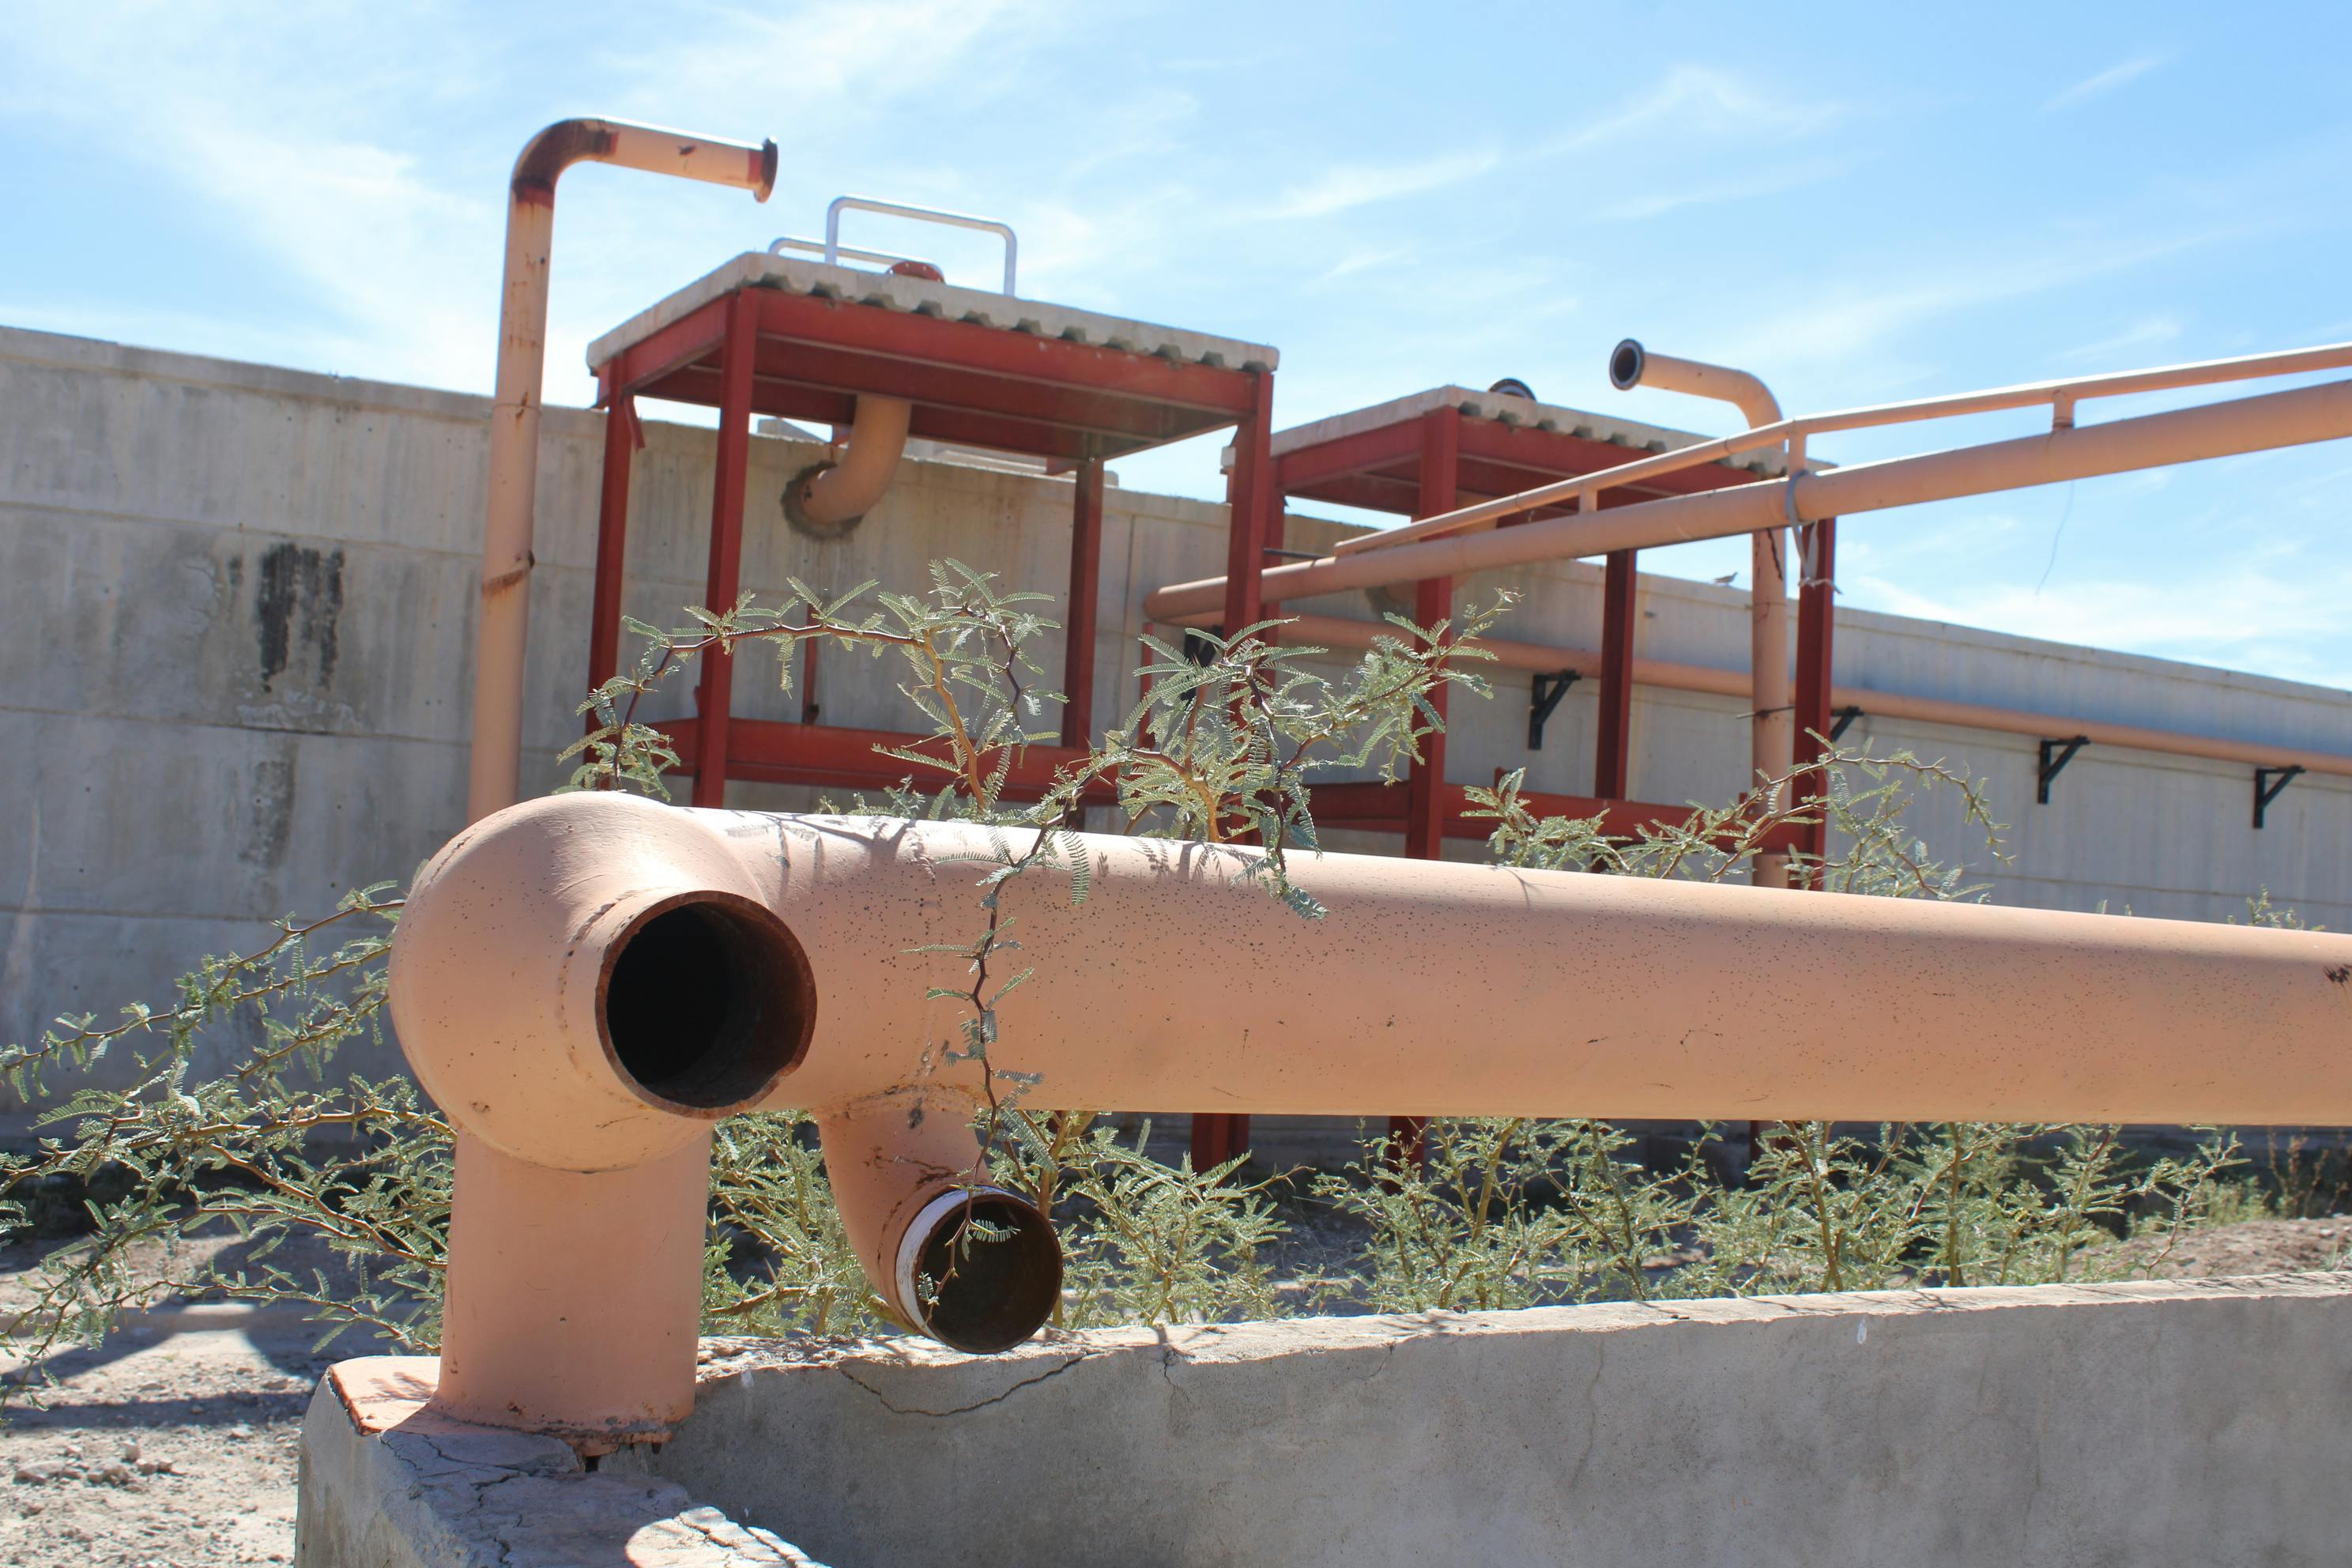 En Matamoros no existe ningún plan para rehabilitar la planta tratadora que comenzó a construirse desde 2009 y la cual ha sido vandalizada. Fotografía: Francisco Rodríguez